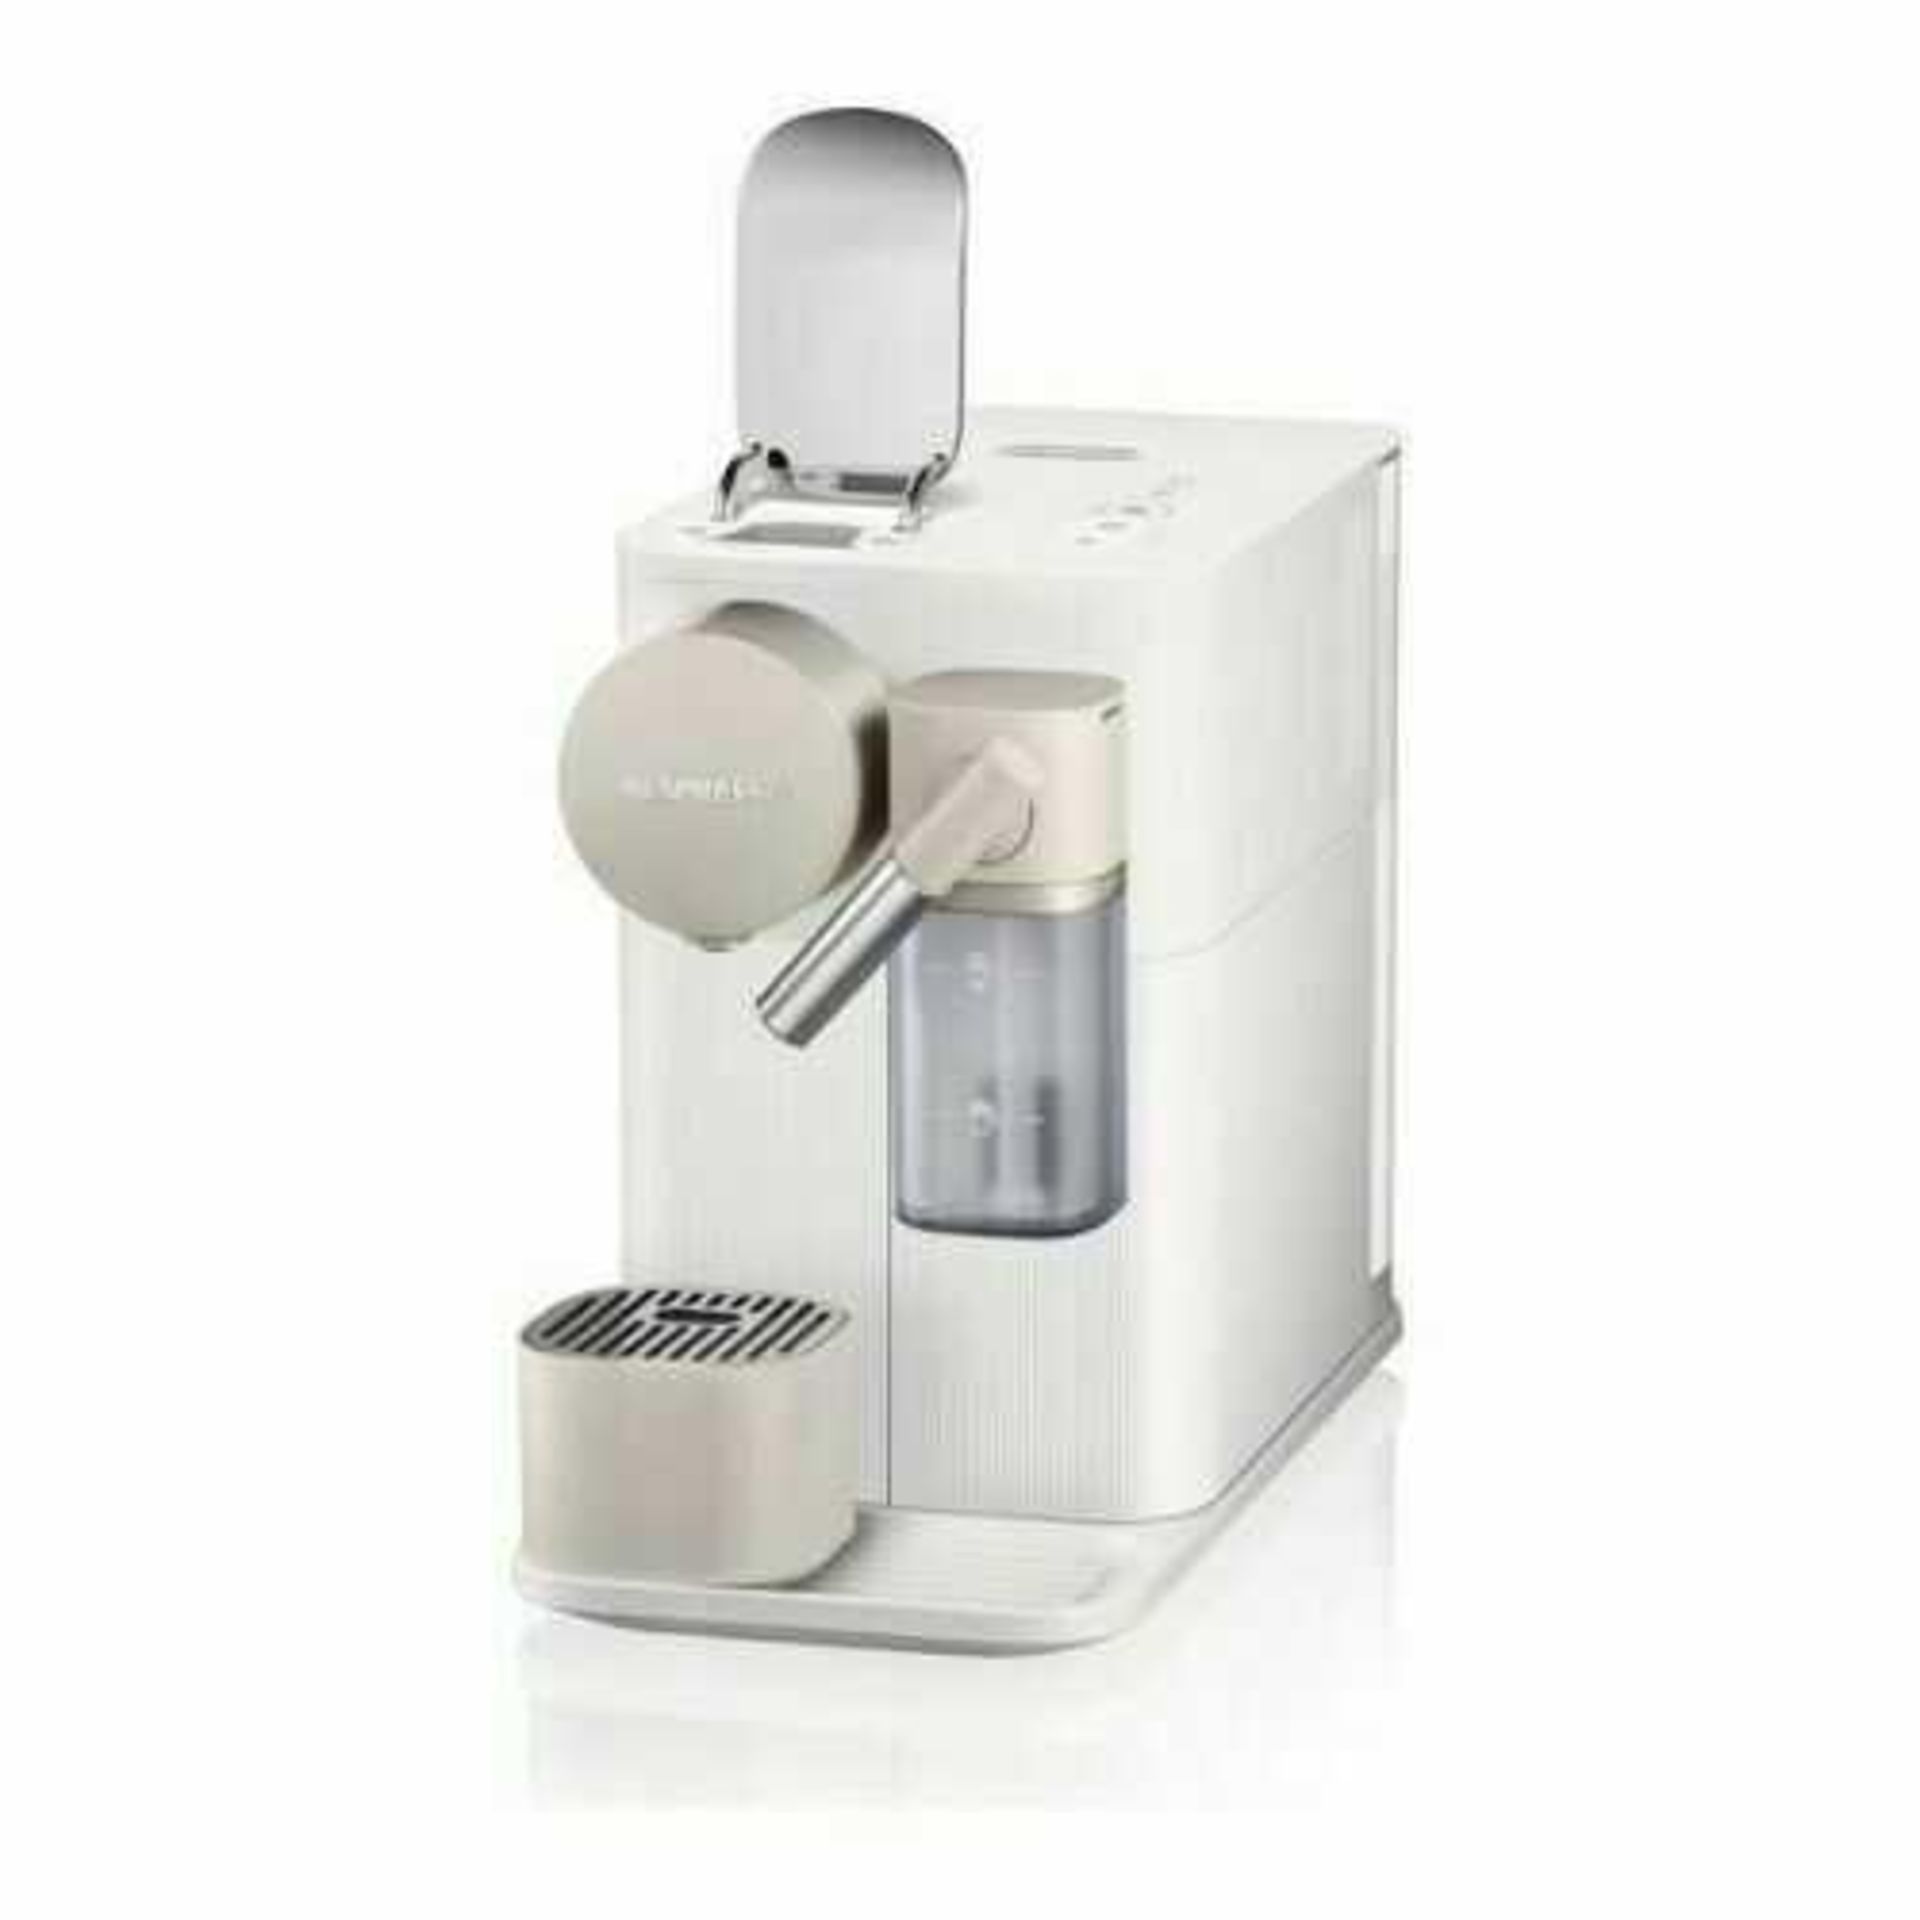 RRP £200 Boxed Nespresso Lattissima One 19 Bar Coffee Machine